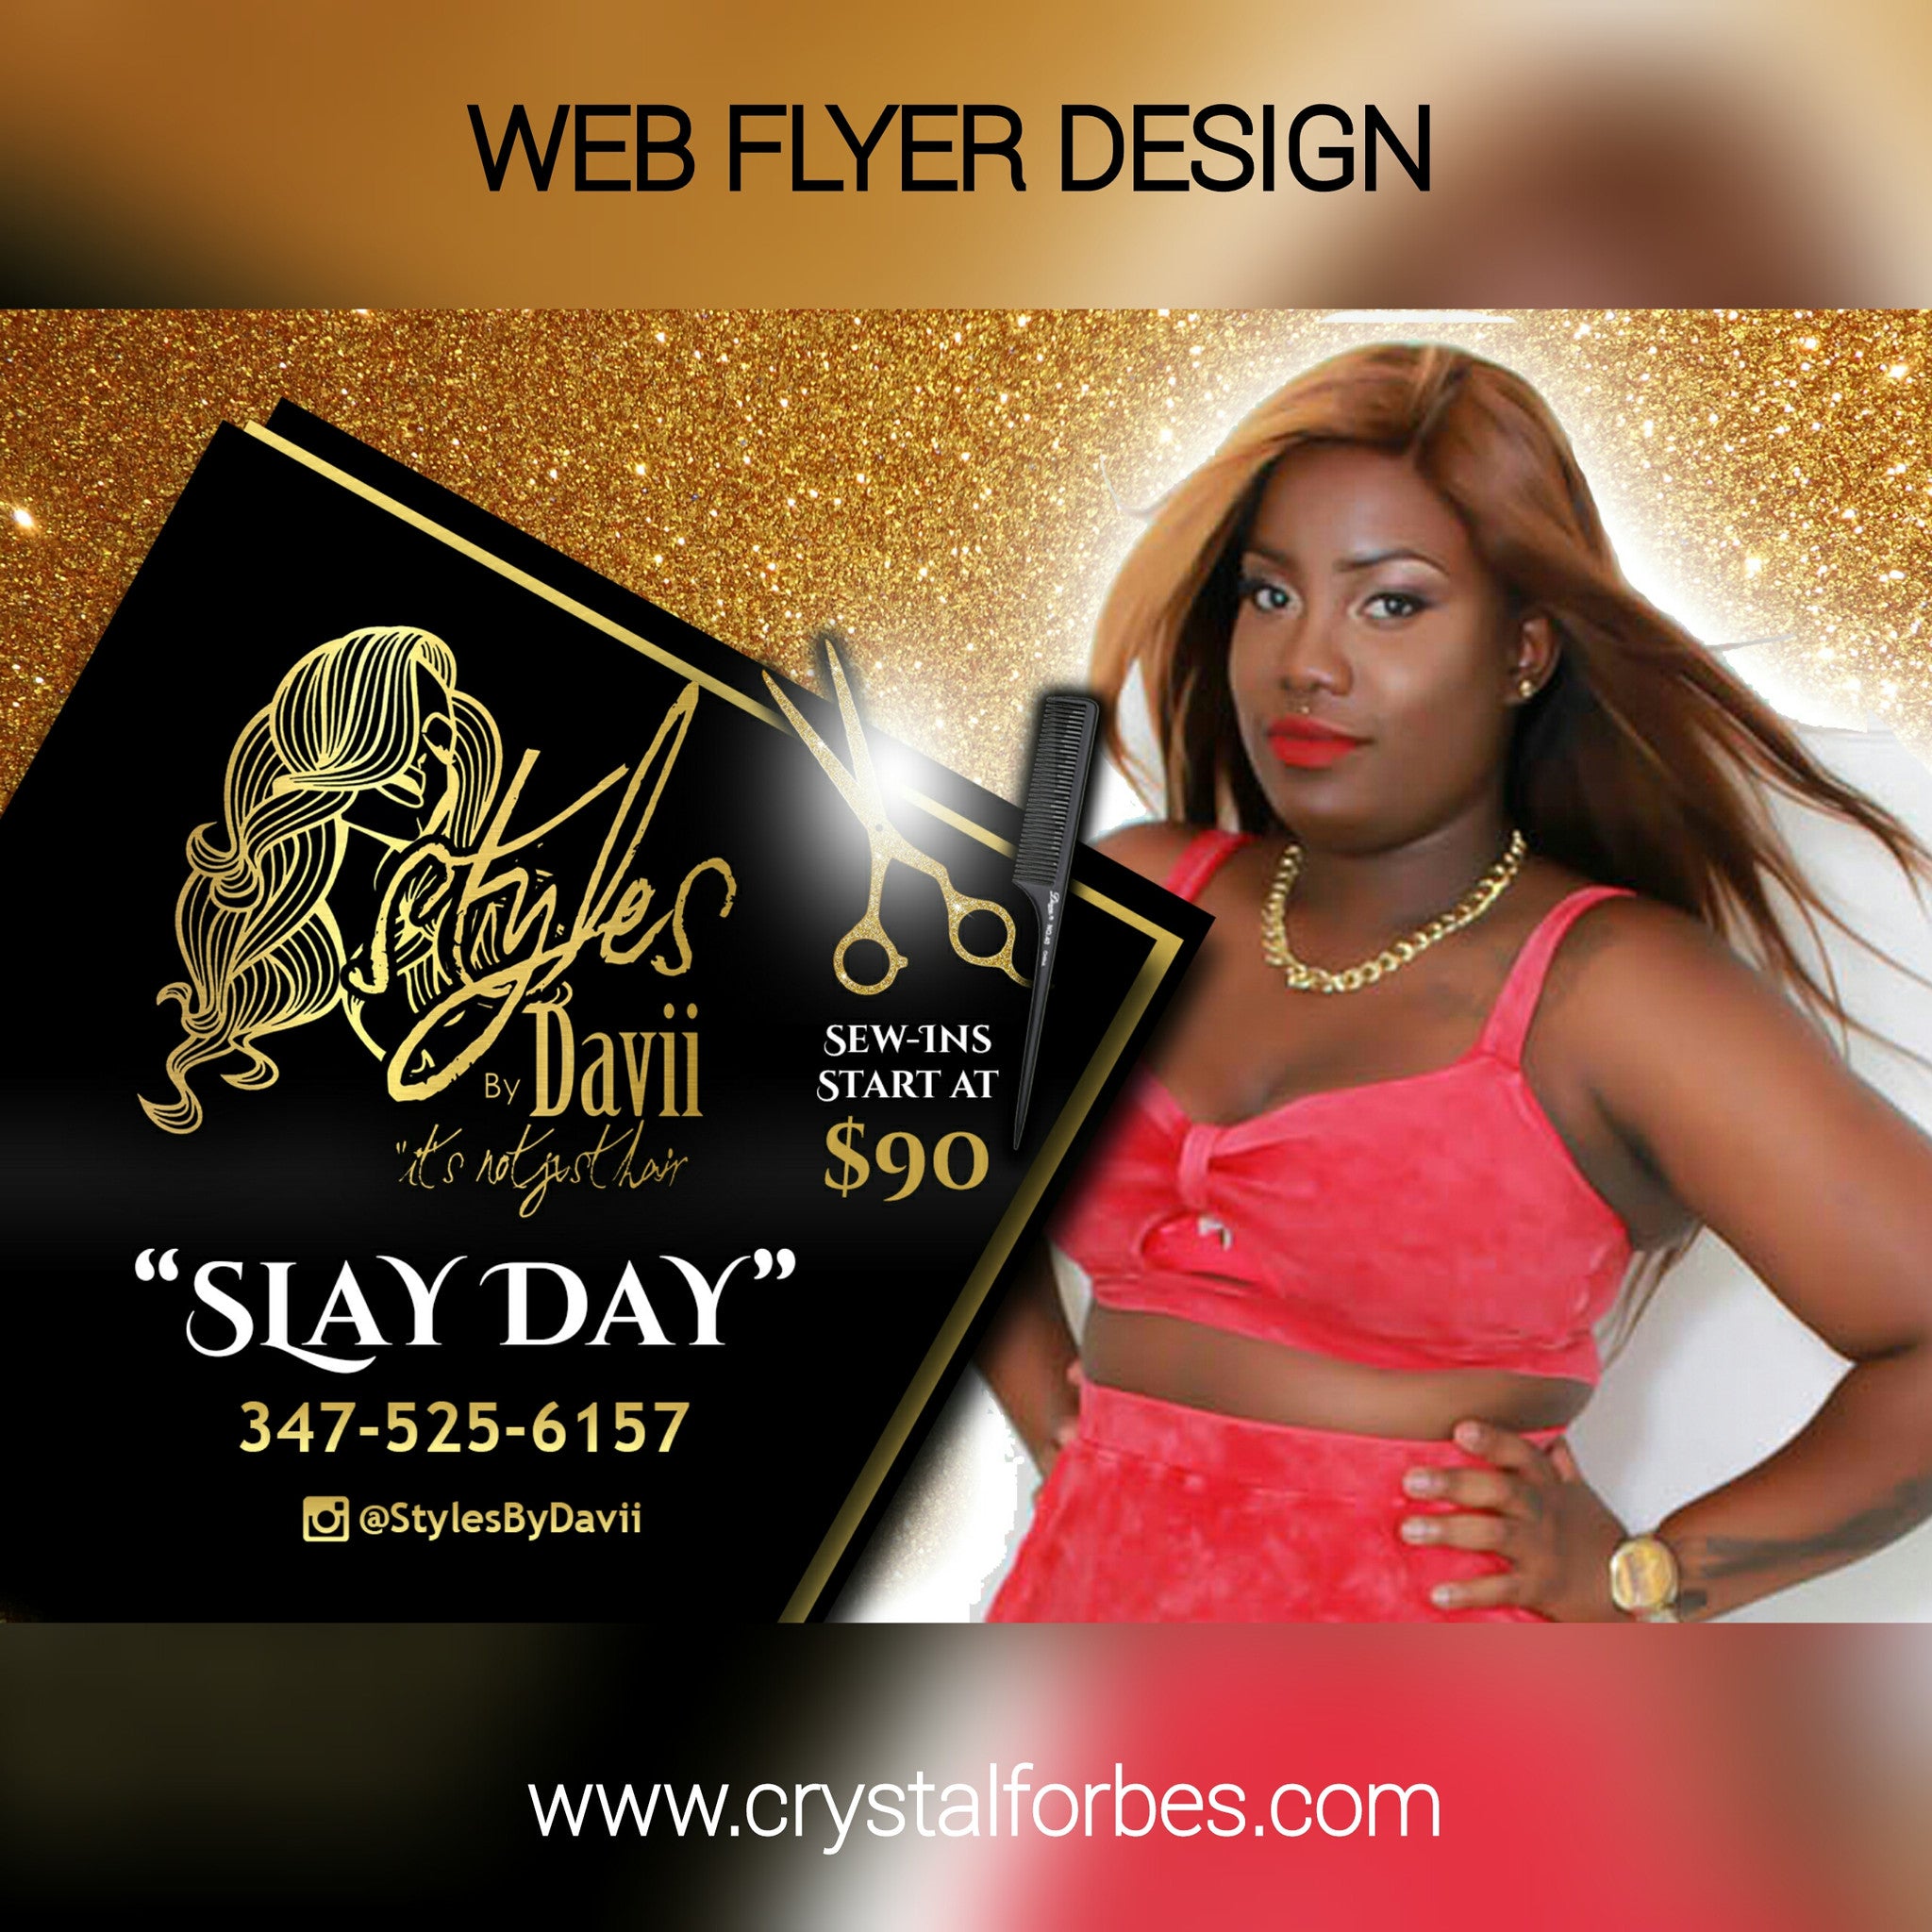 Web Flyer Design – Crystal Forbes Design Studio